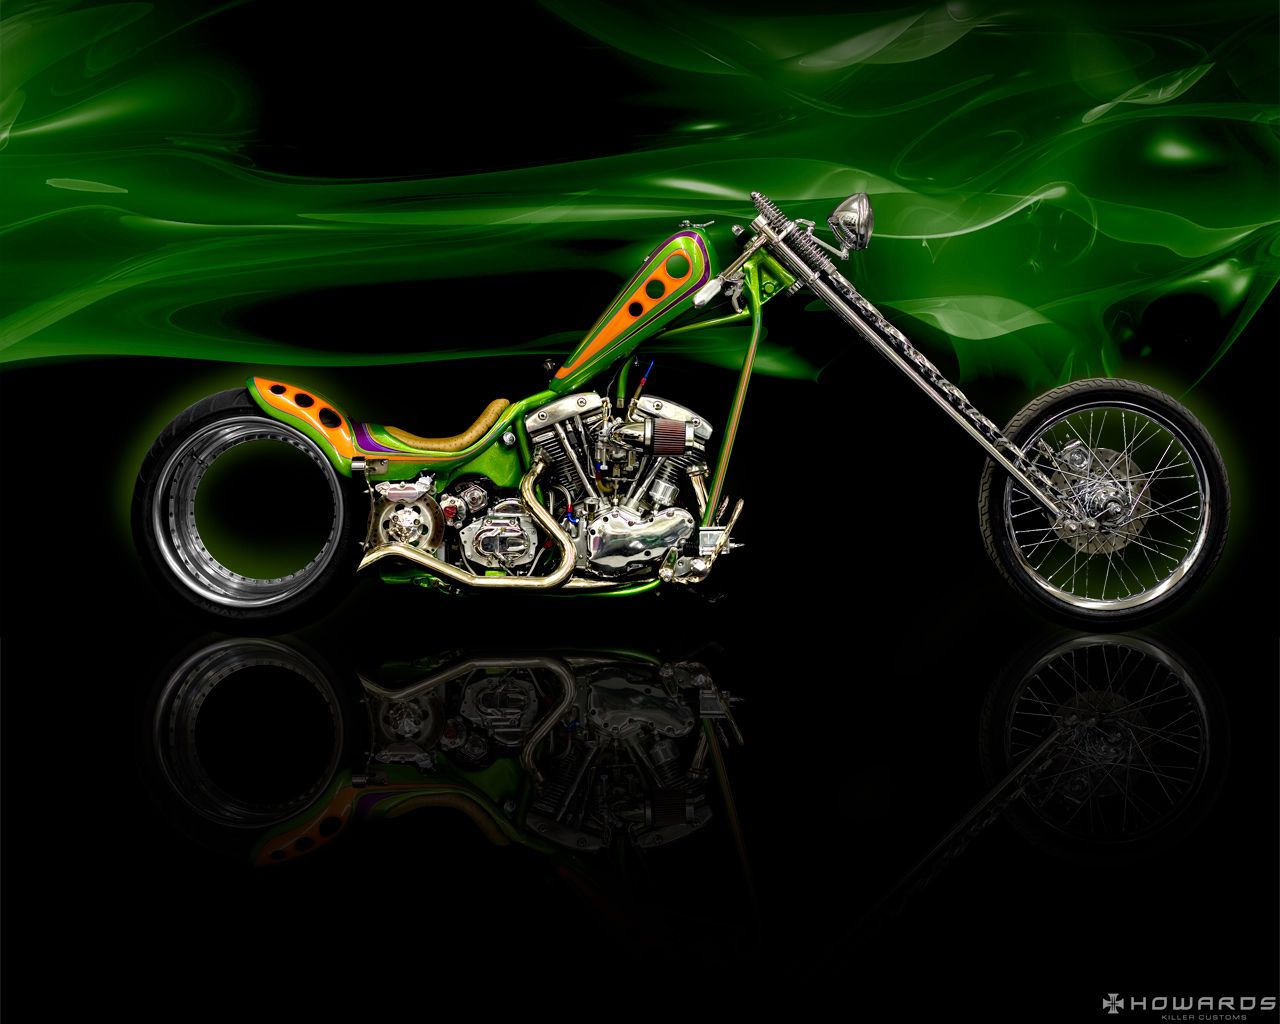 39+] Custom Harley Davidson Wallpapers - WallpaperSafari